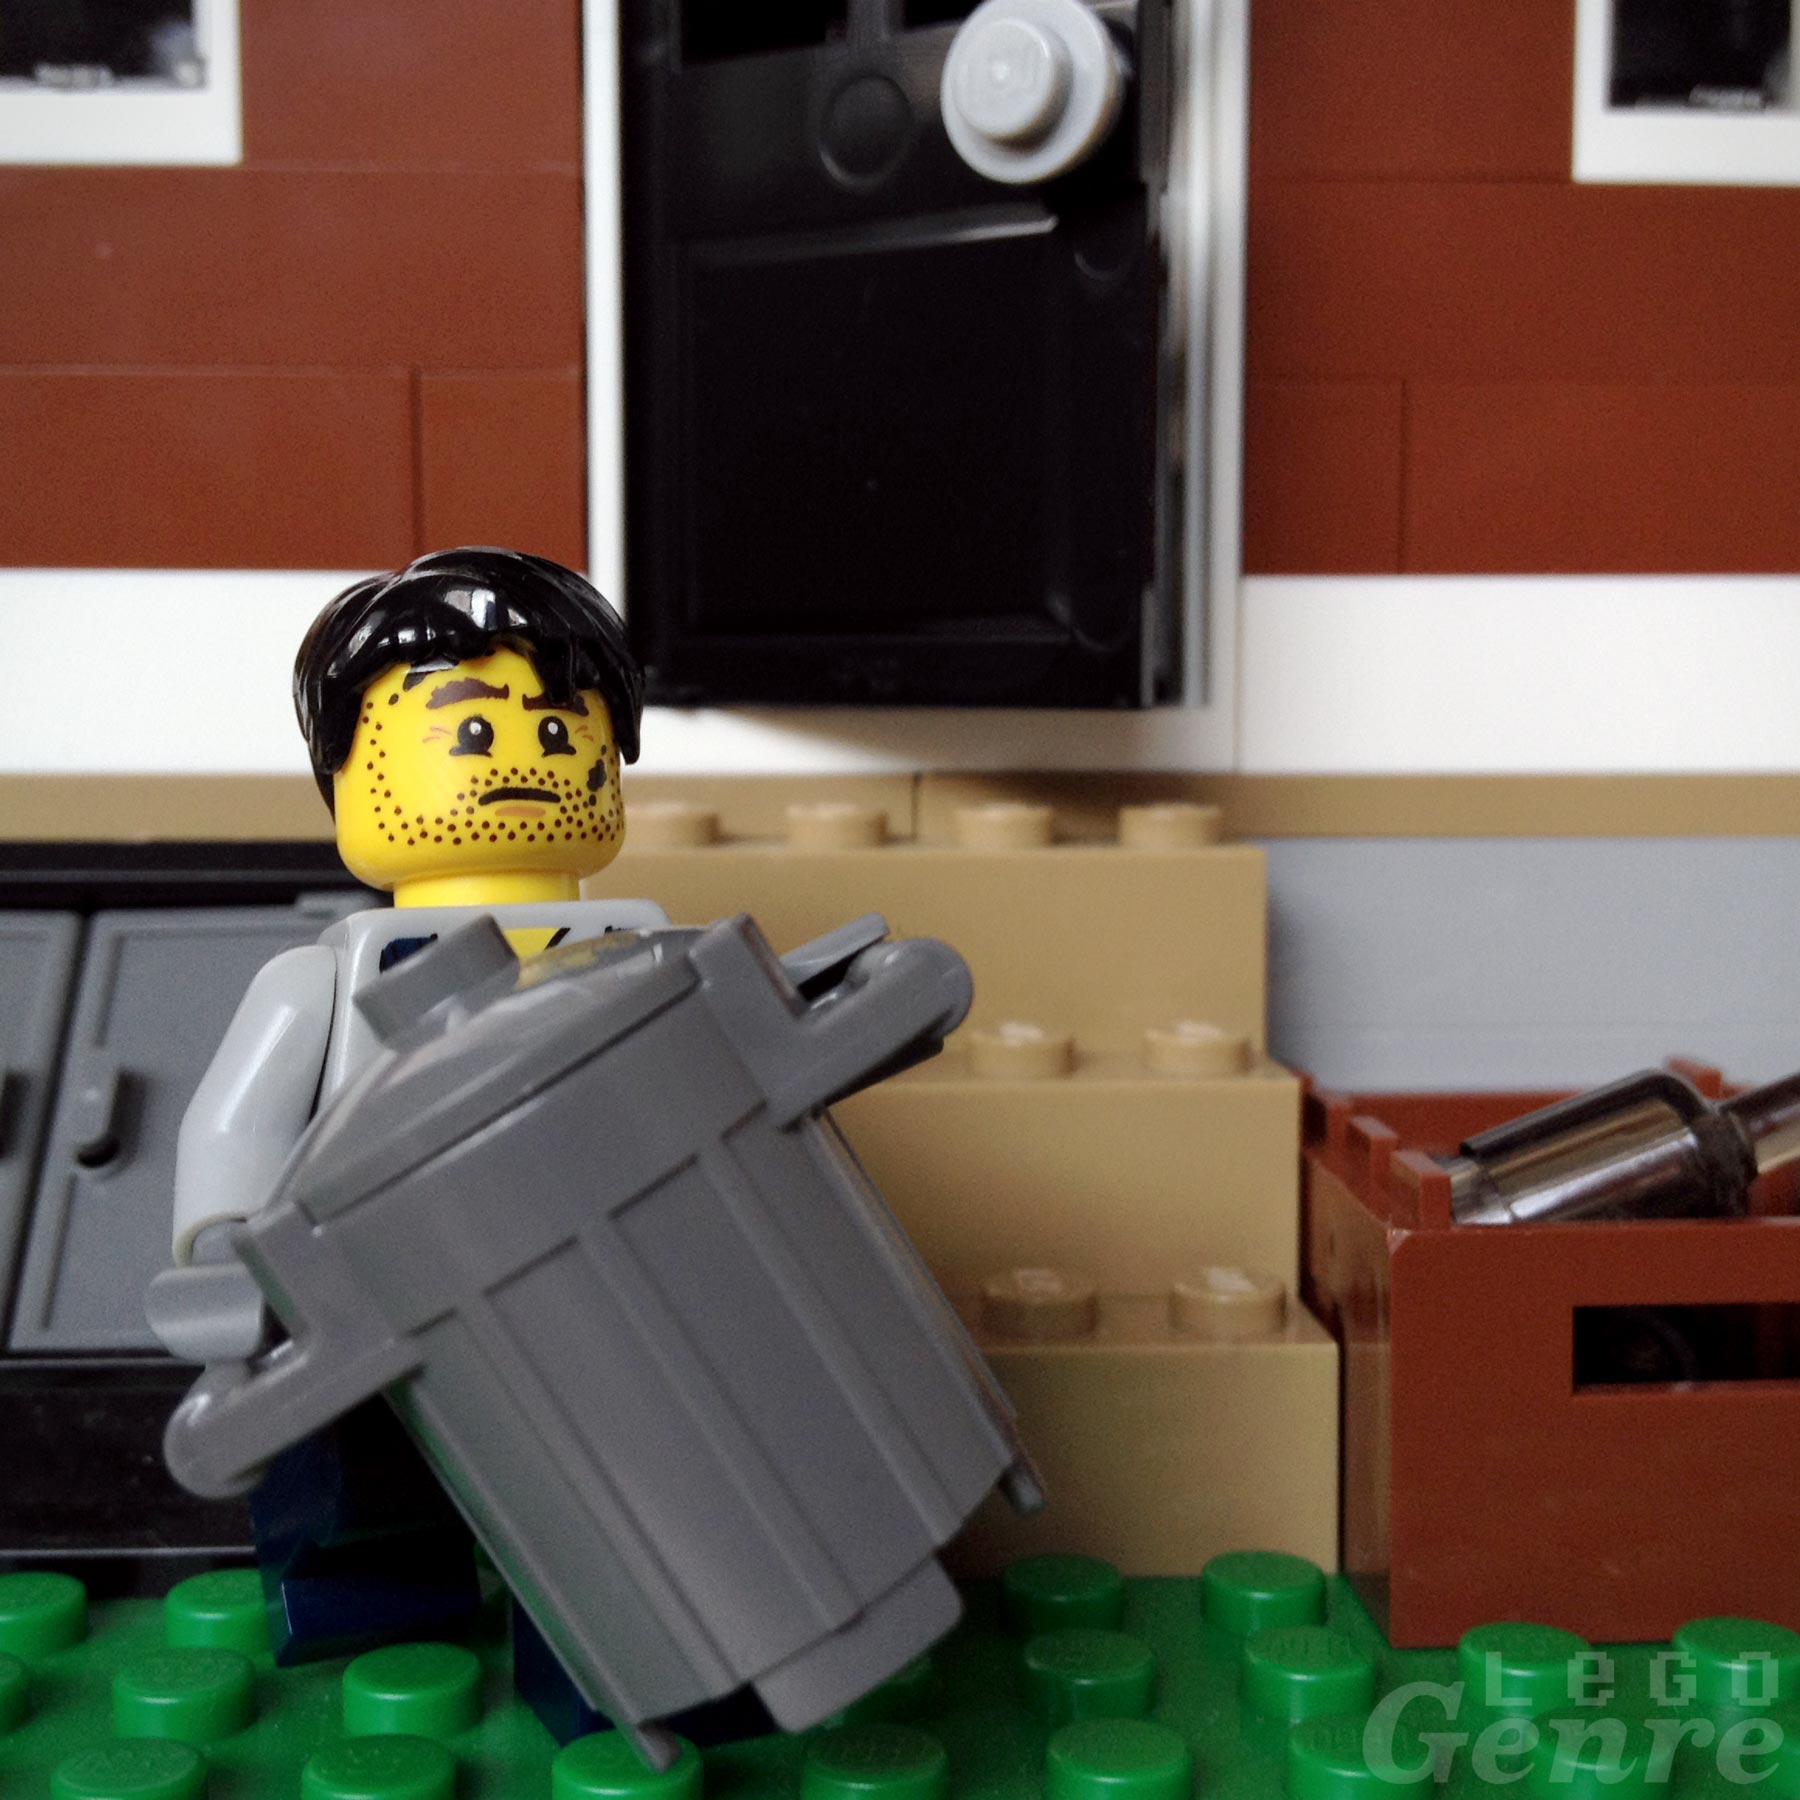 LegoGenre 00365: The Trash Man